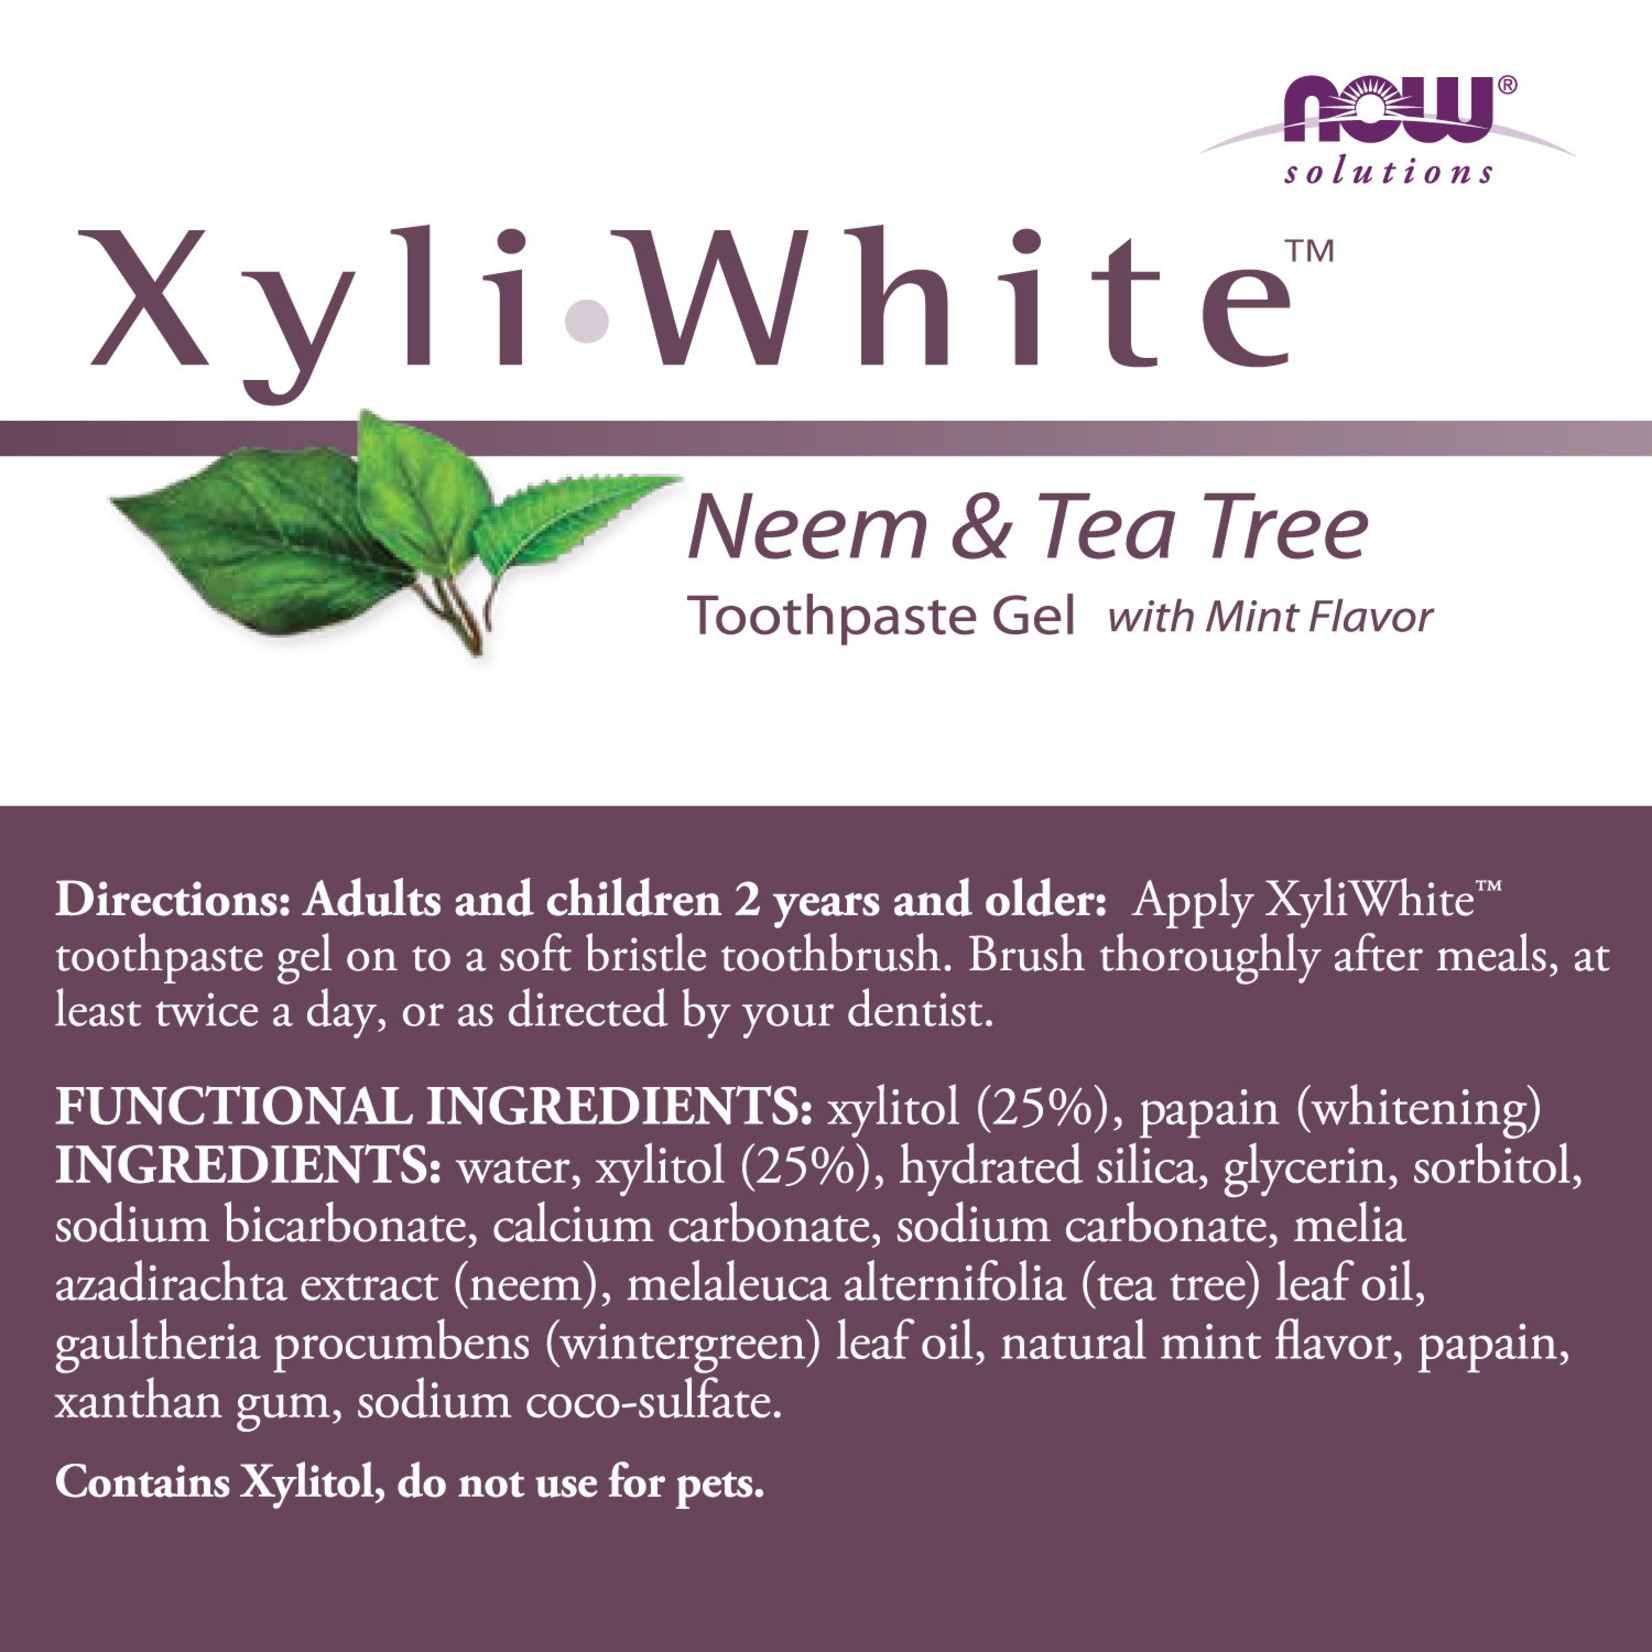 Now Now - Xyliwhite Neem & Tea Tree Toothpaste - 6.4 oz